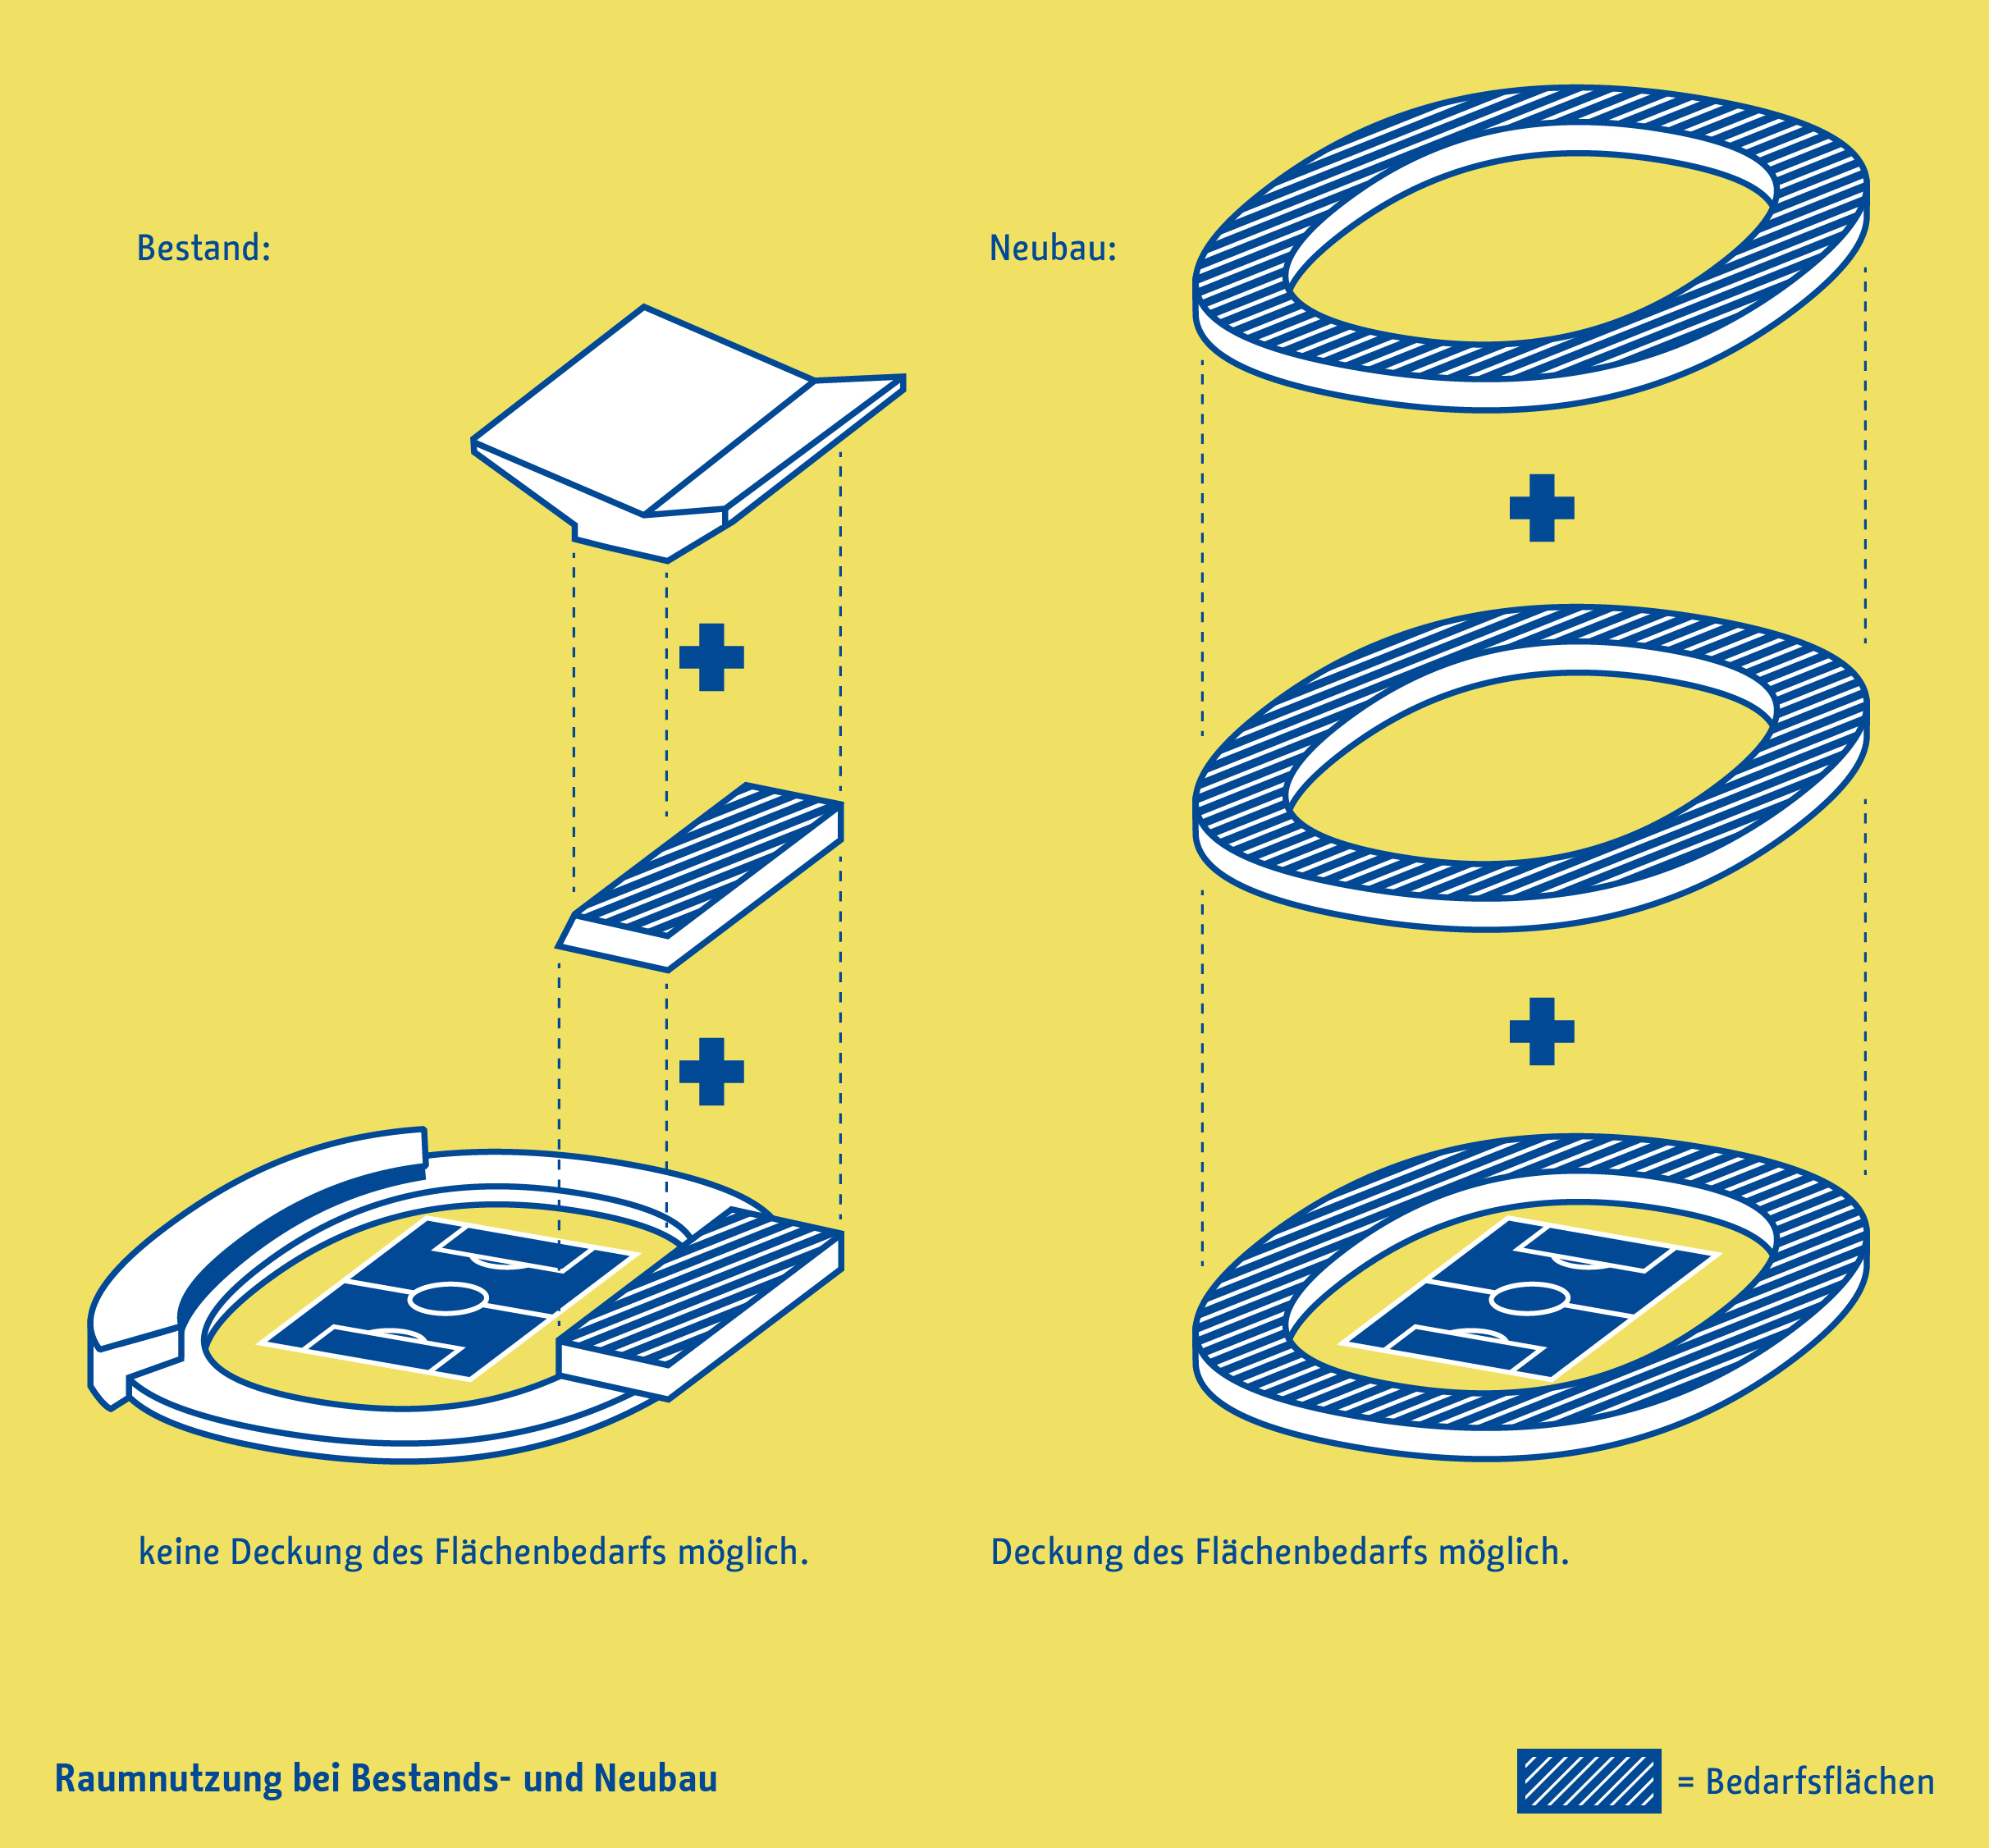 Die Abbildung zeigt eine schematische Gegenüberstellung der Raumnutzung im Bestandsbau und im Neubau des Stadions.